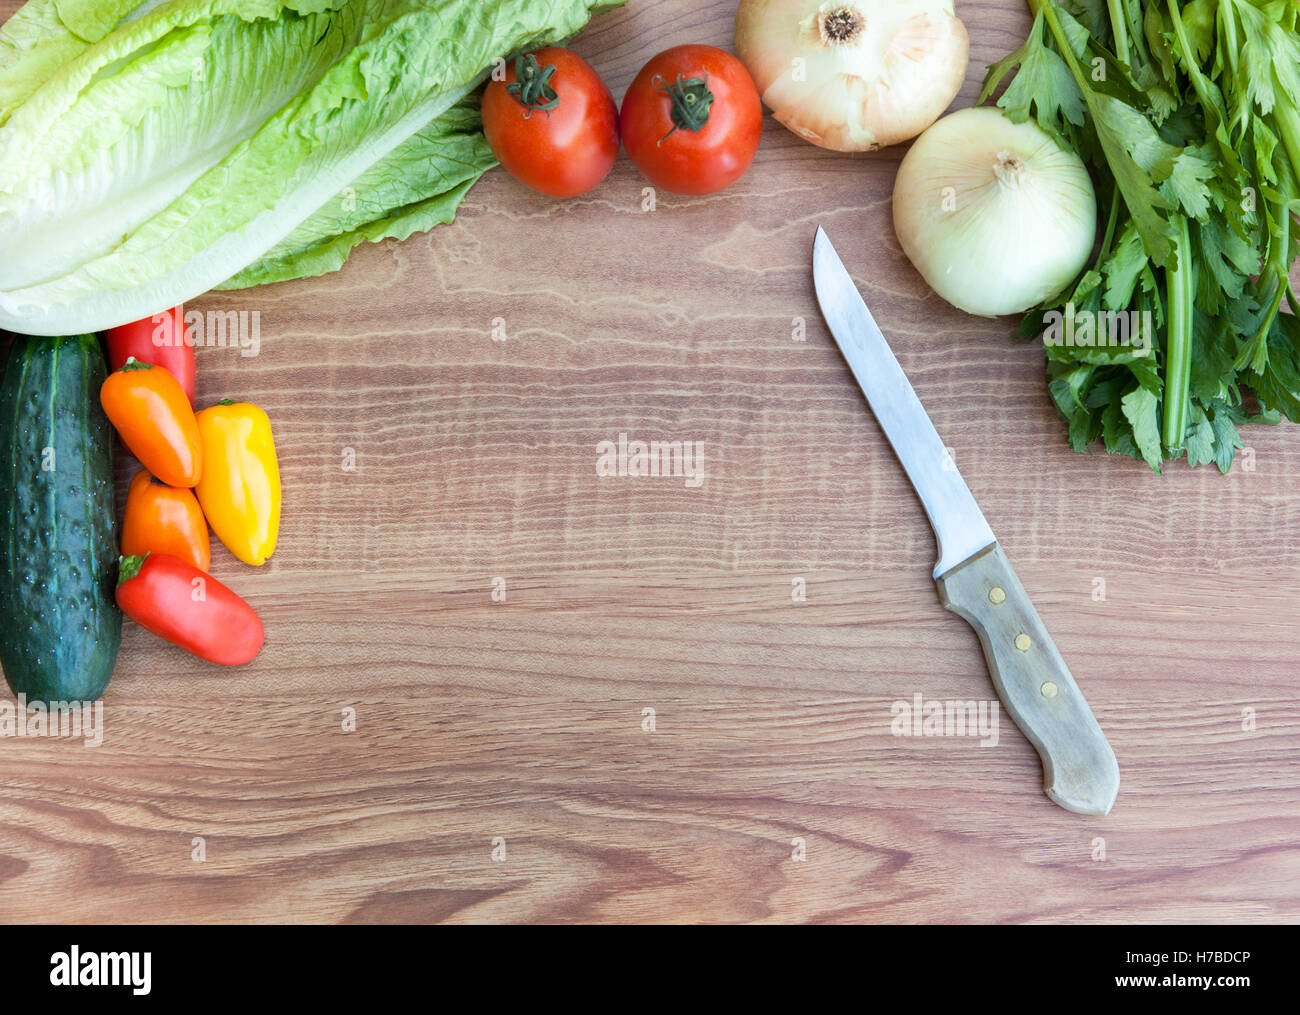 Ortaggi freschi (pomodori, peperoni, cipolle, cetrioli, lattuga e sedano) con il coltello sul taglio di legno cinghiale Foto Stock